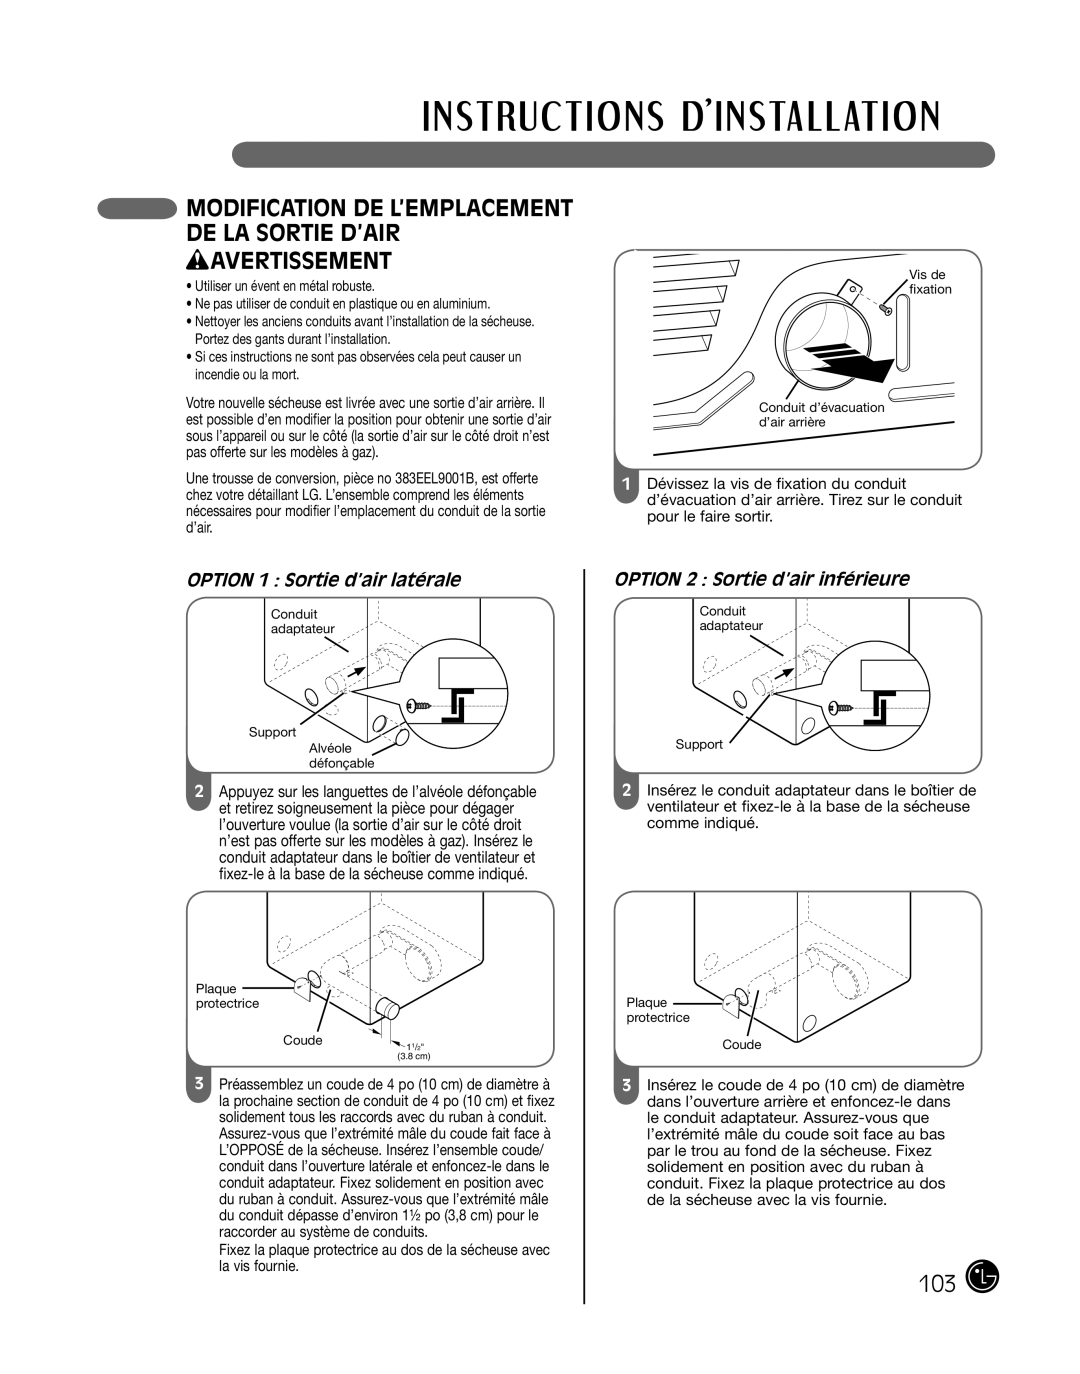 LG Electronics P154 manual wAVERTISSEMENT, Modification De L’Emplacement De La Sortie D’Air, OPTION 1 Sortie d’air latérale 